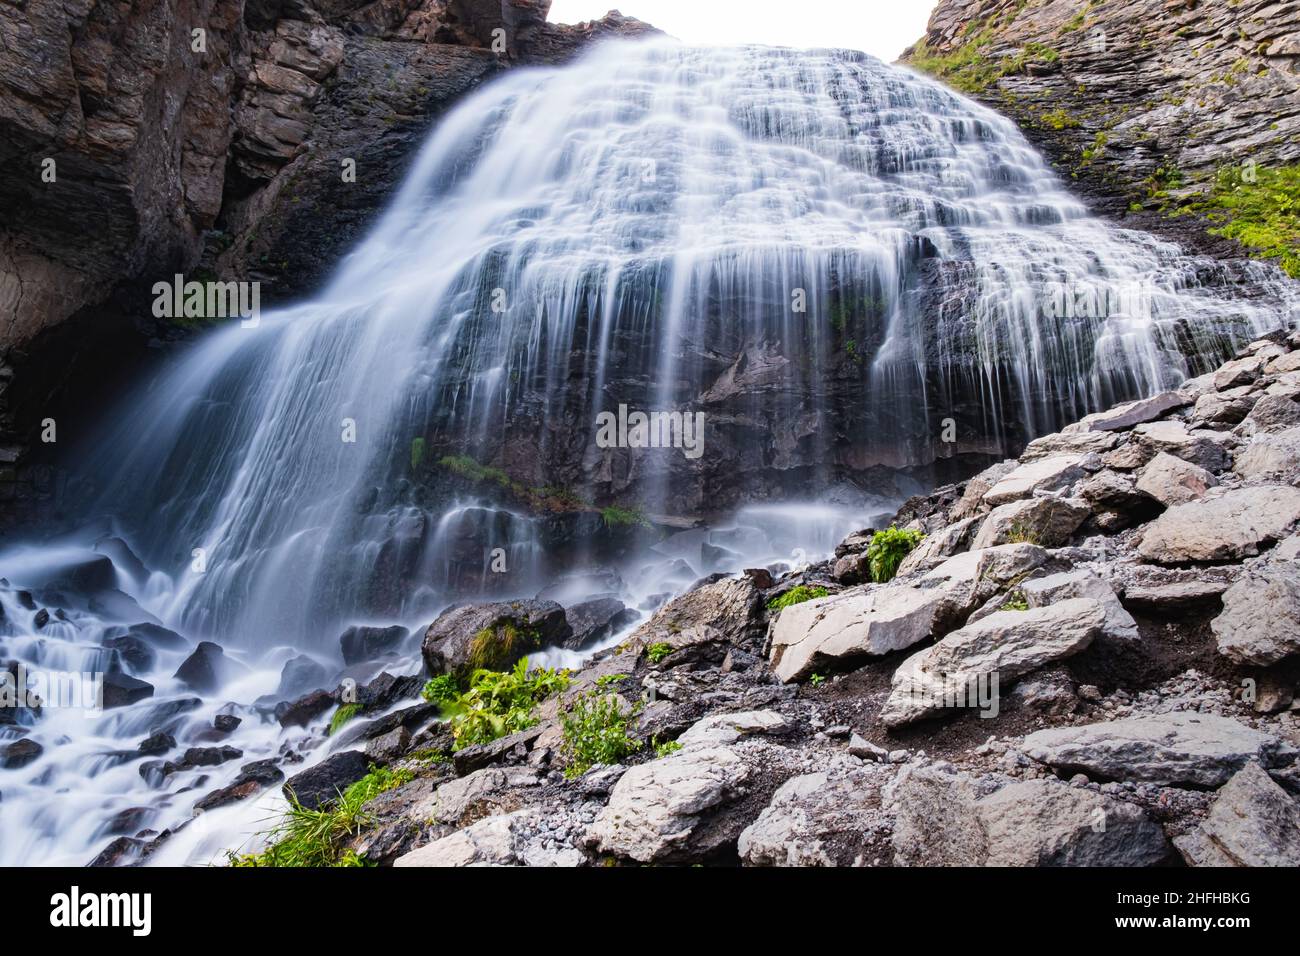 Una cascada gigante de montaña En un soleado día de verano, arroyos de agua caen desde una gran altura sobre rocas rocosas Foto de stock